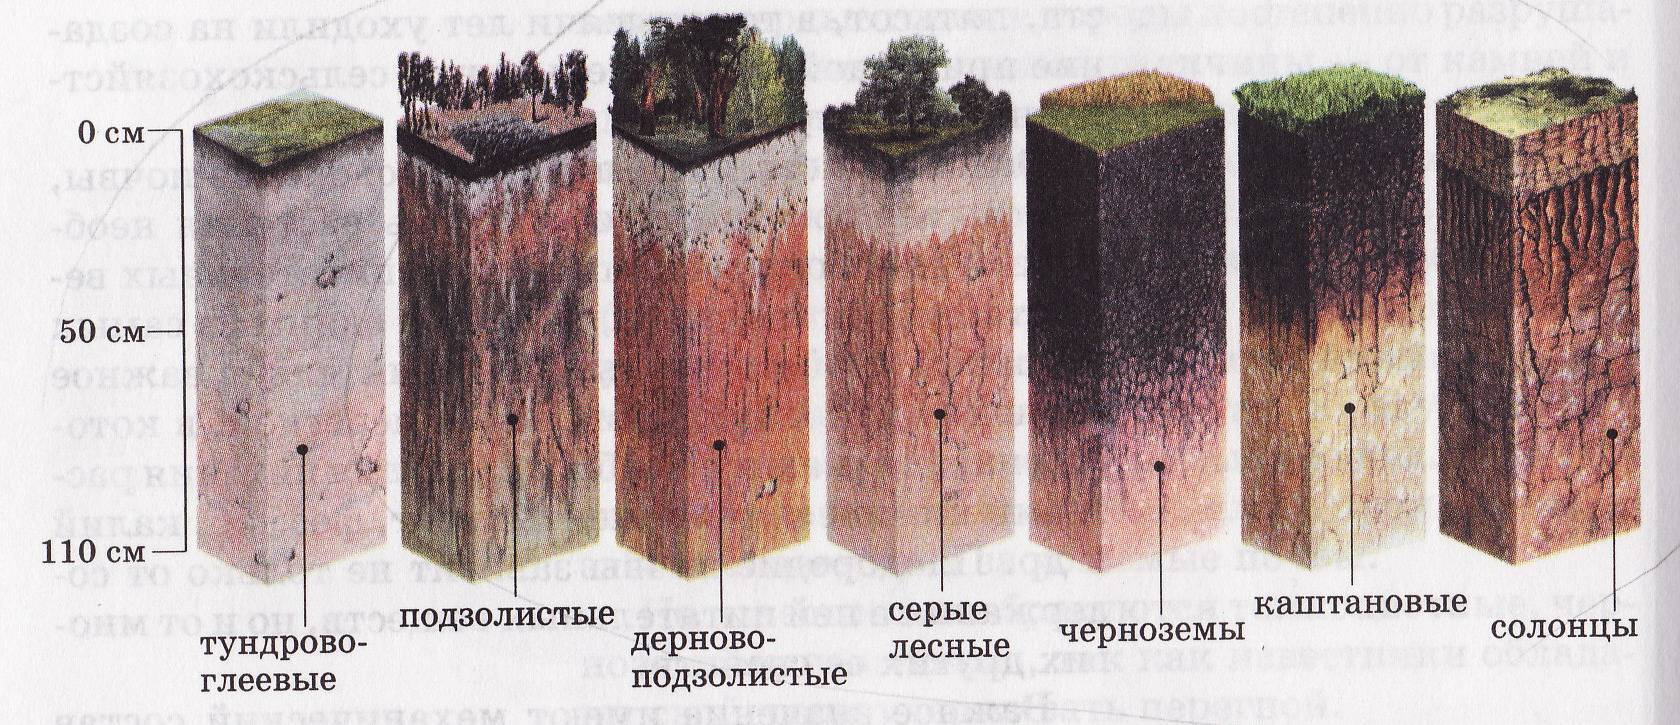 Как понять какая почва. Дерново-подзолистая, серая Лесная, чернозем почвенные горизонты. Подзолистая почва профиль почвы. Пахотные дерново-подзолистые почвы профиль. Почвенный профиль подзолистых почв.